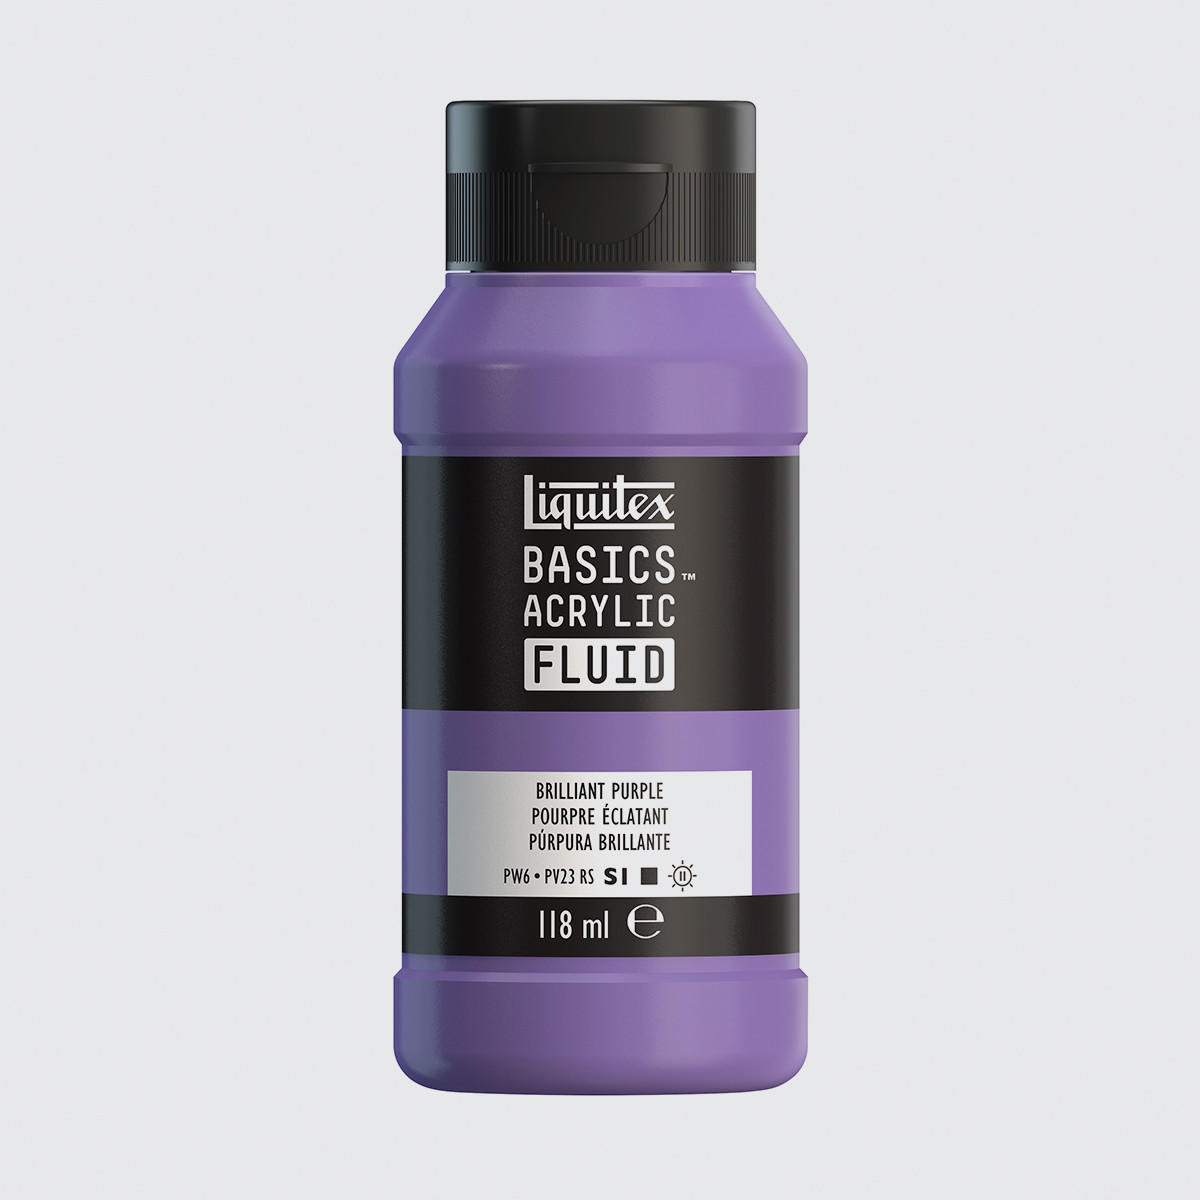 Liquitex Basics Acrylic Fluid 118ml Brilliant Purple